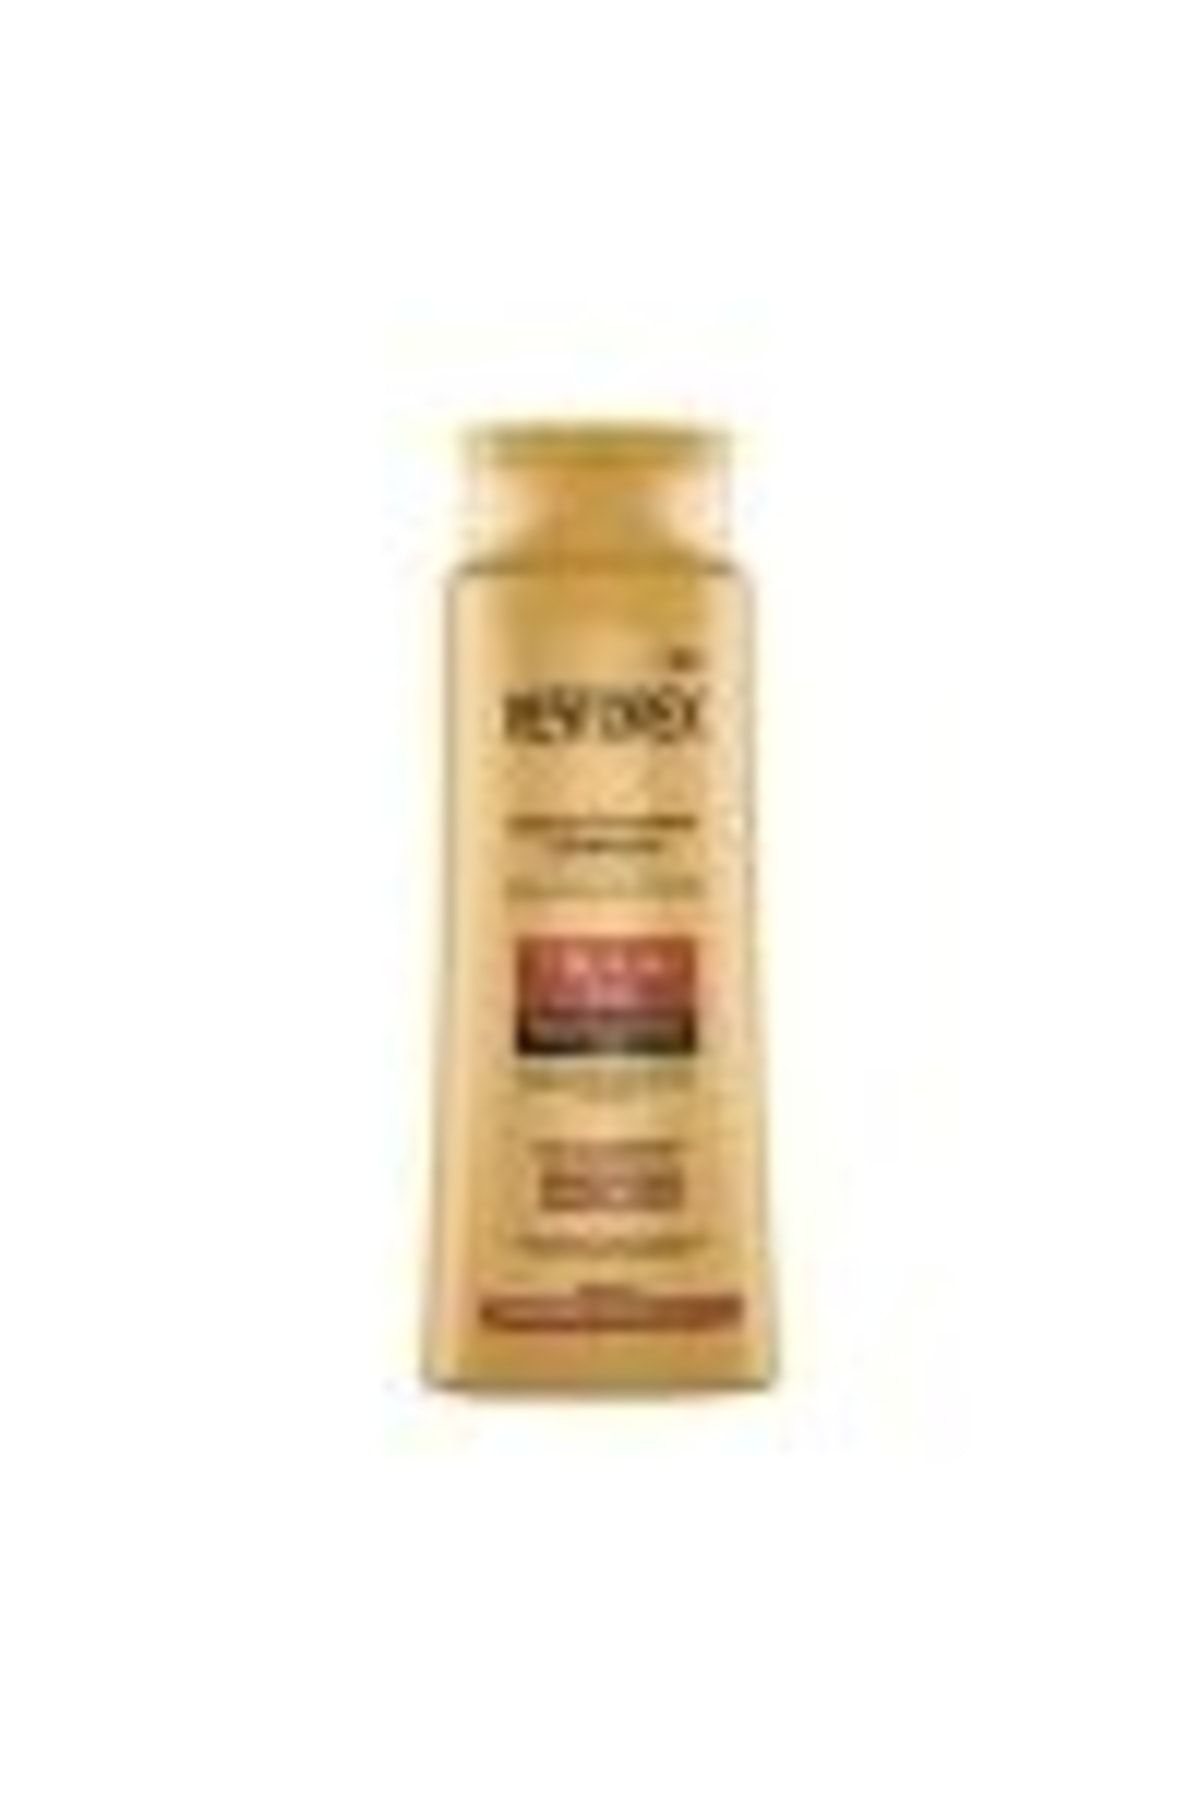 Restorex 7 Besleyici Yağ Bakım Şampuanı 500 Ml